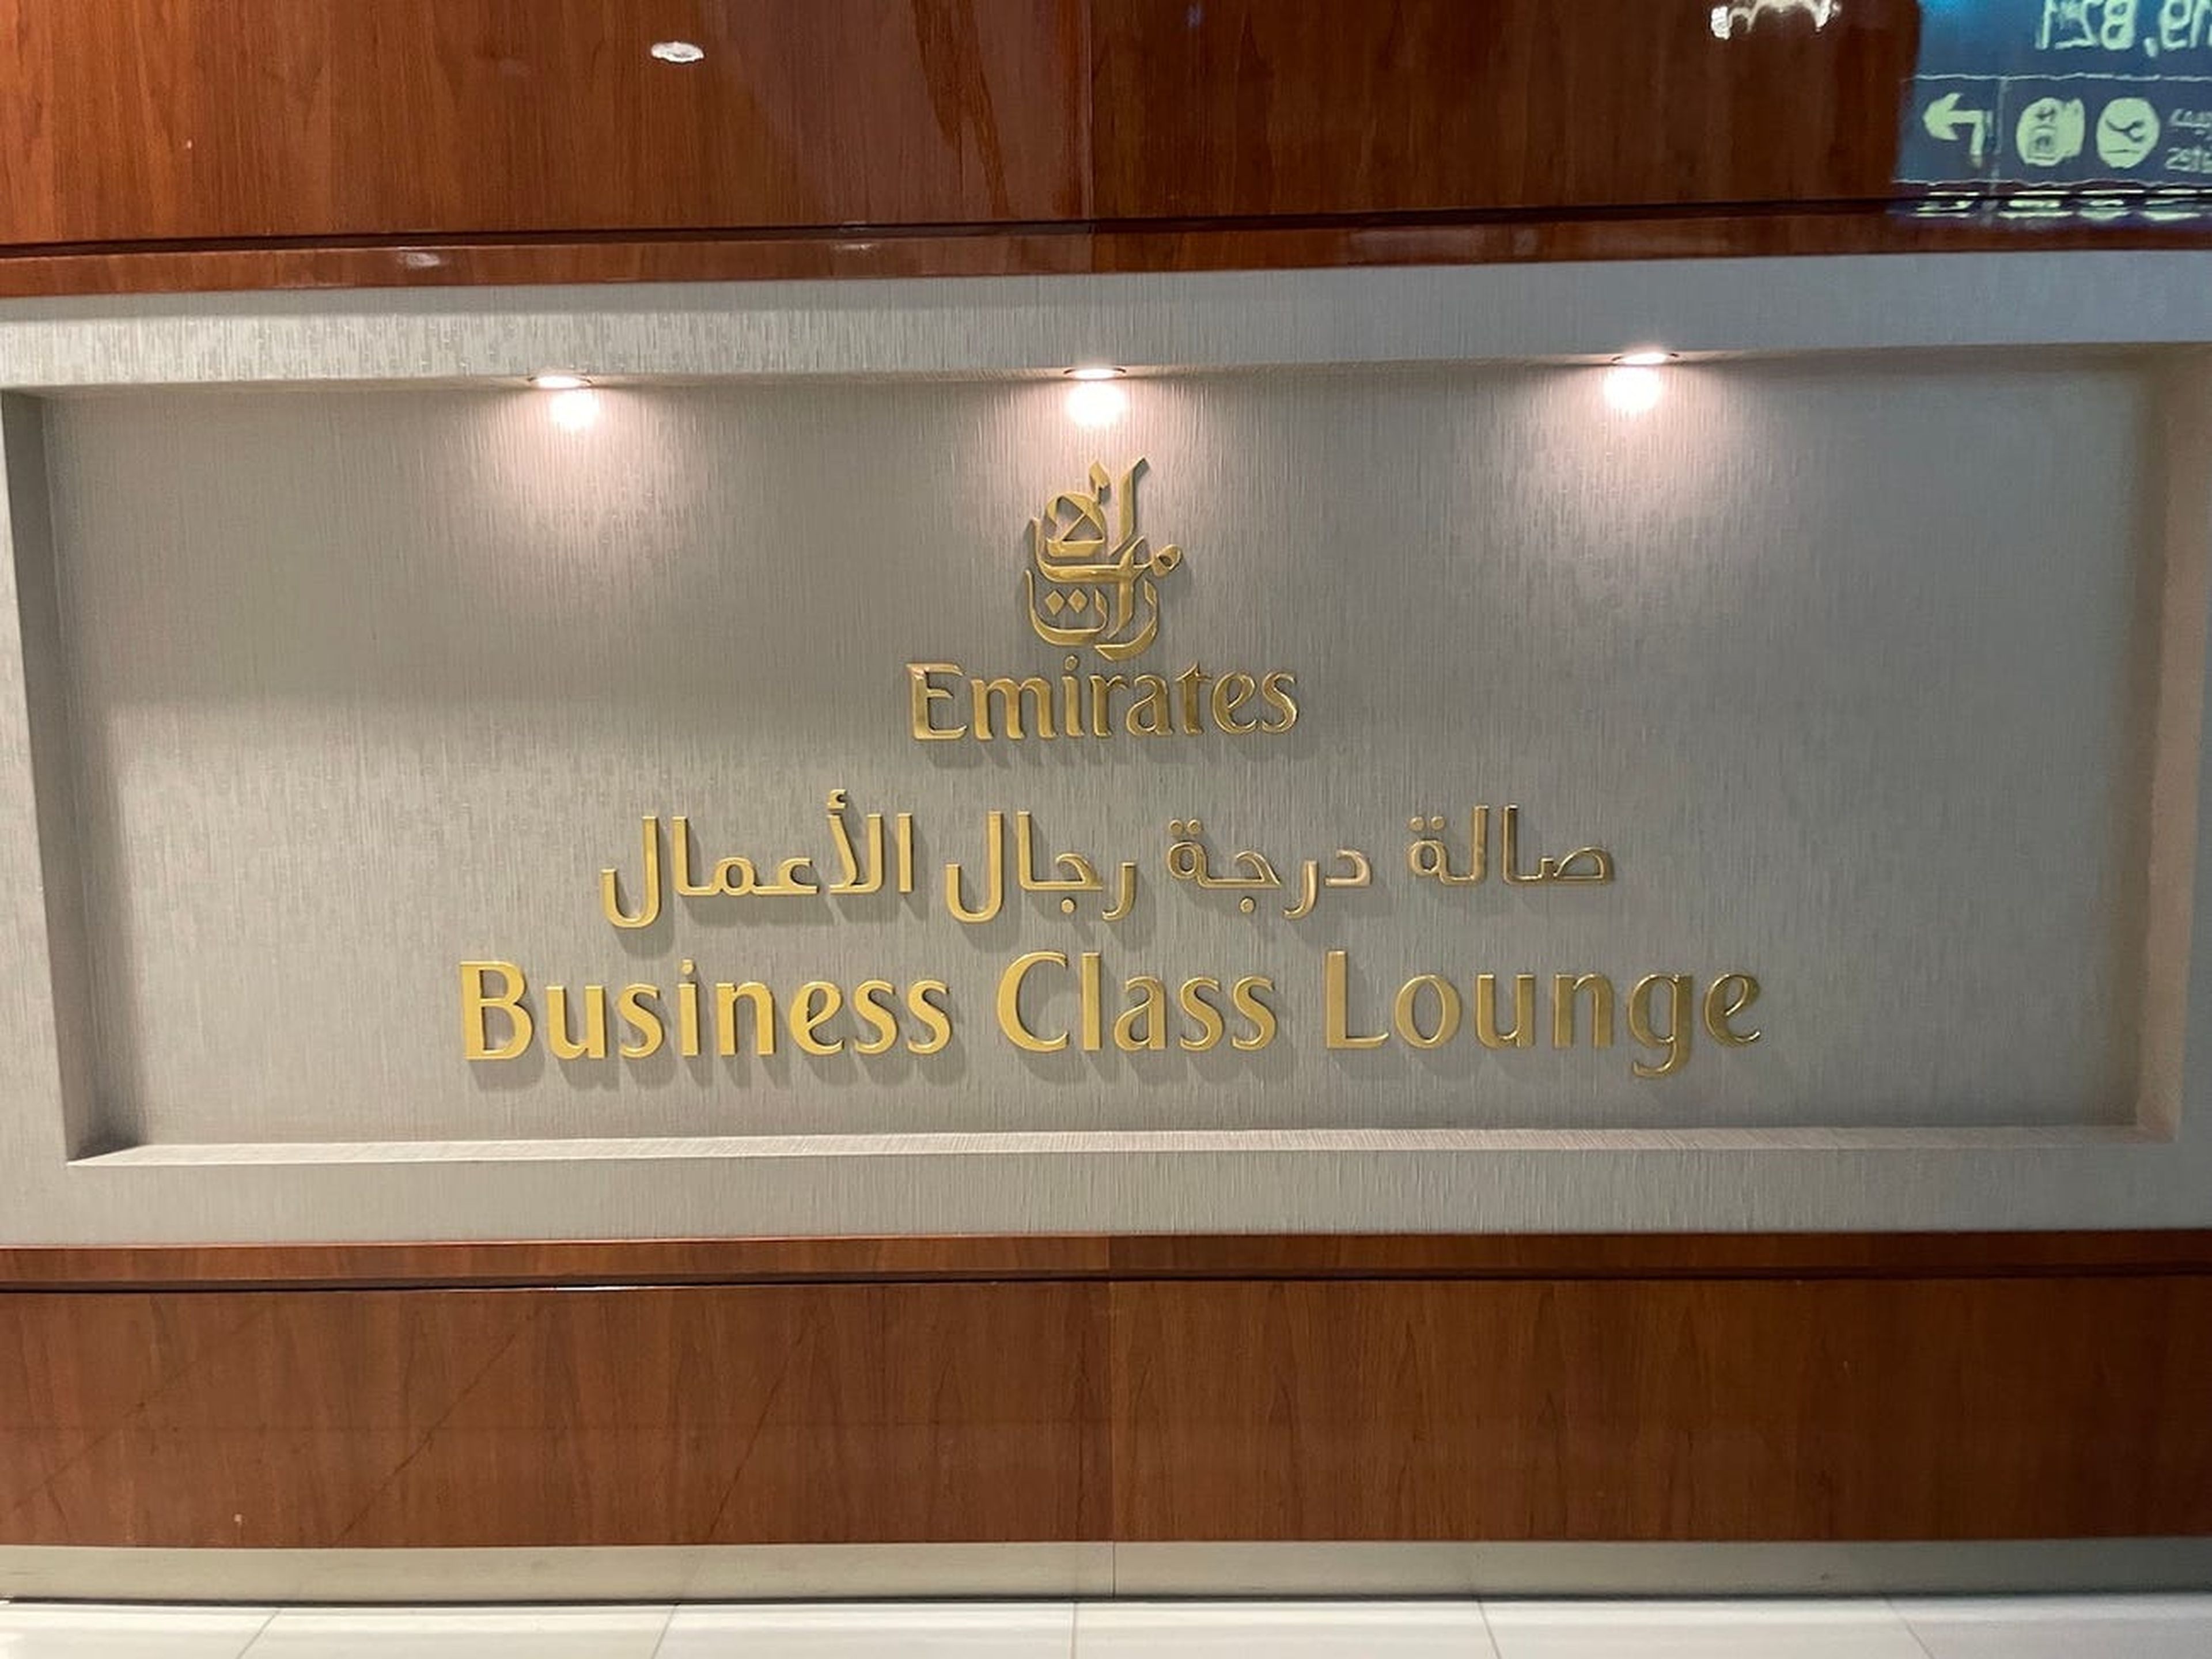 Vuelo con Emirates en business